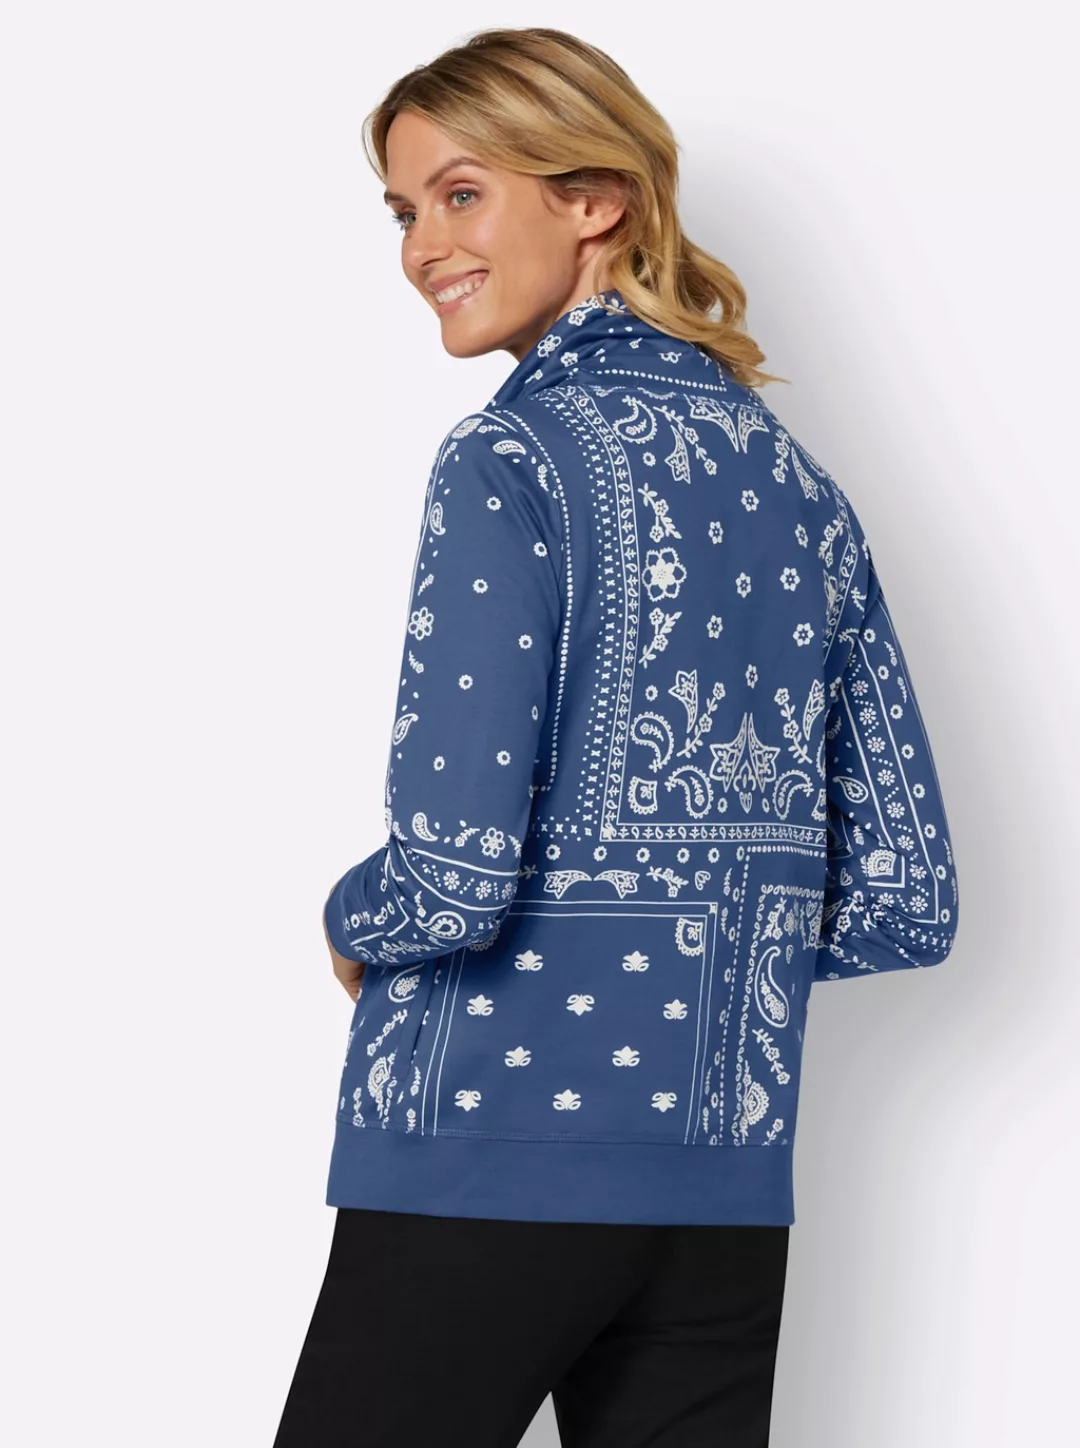 Inspirationen Sweatshirt günstig online kaufen